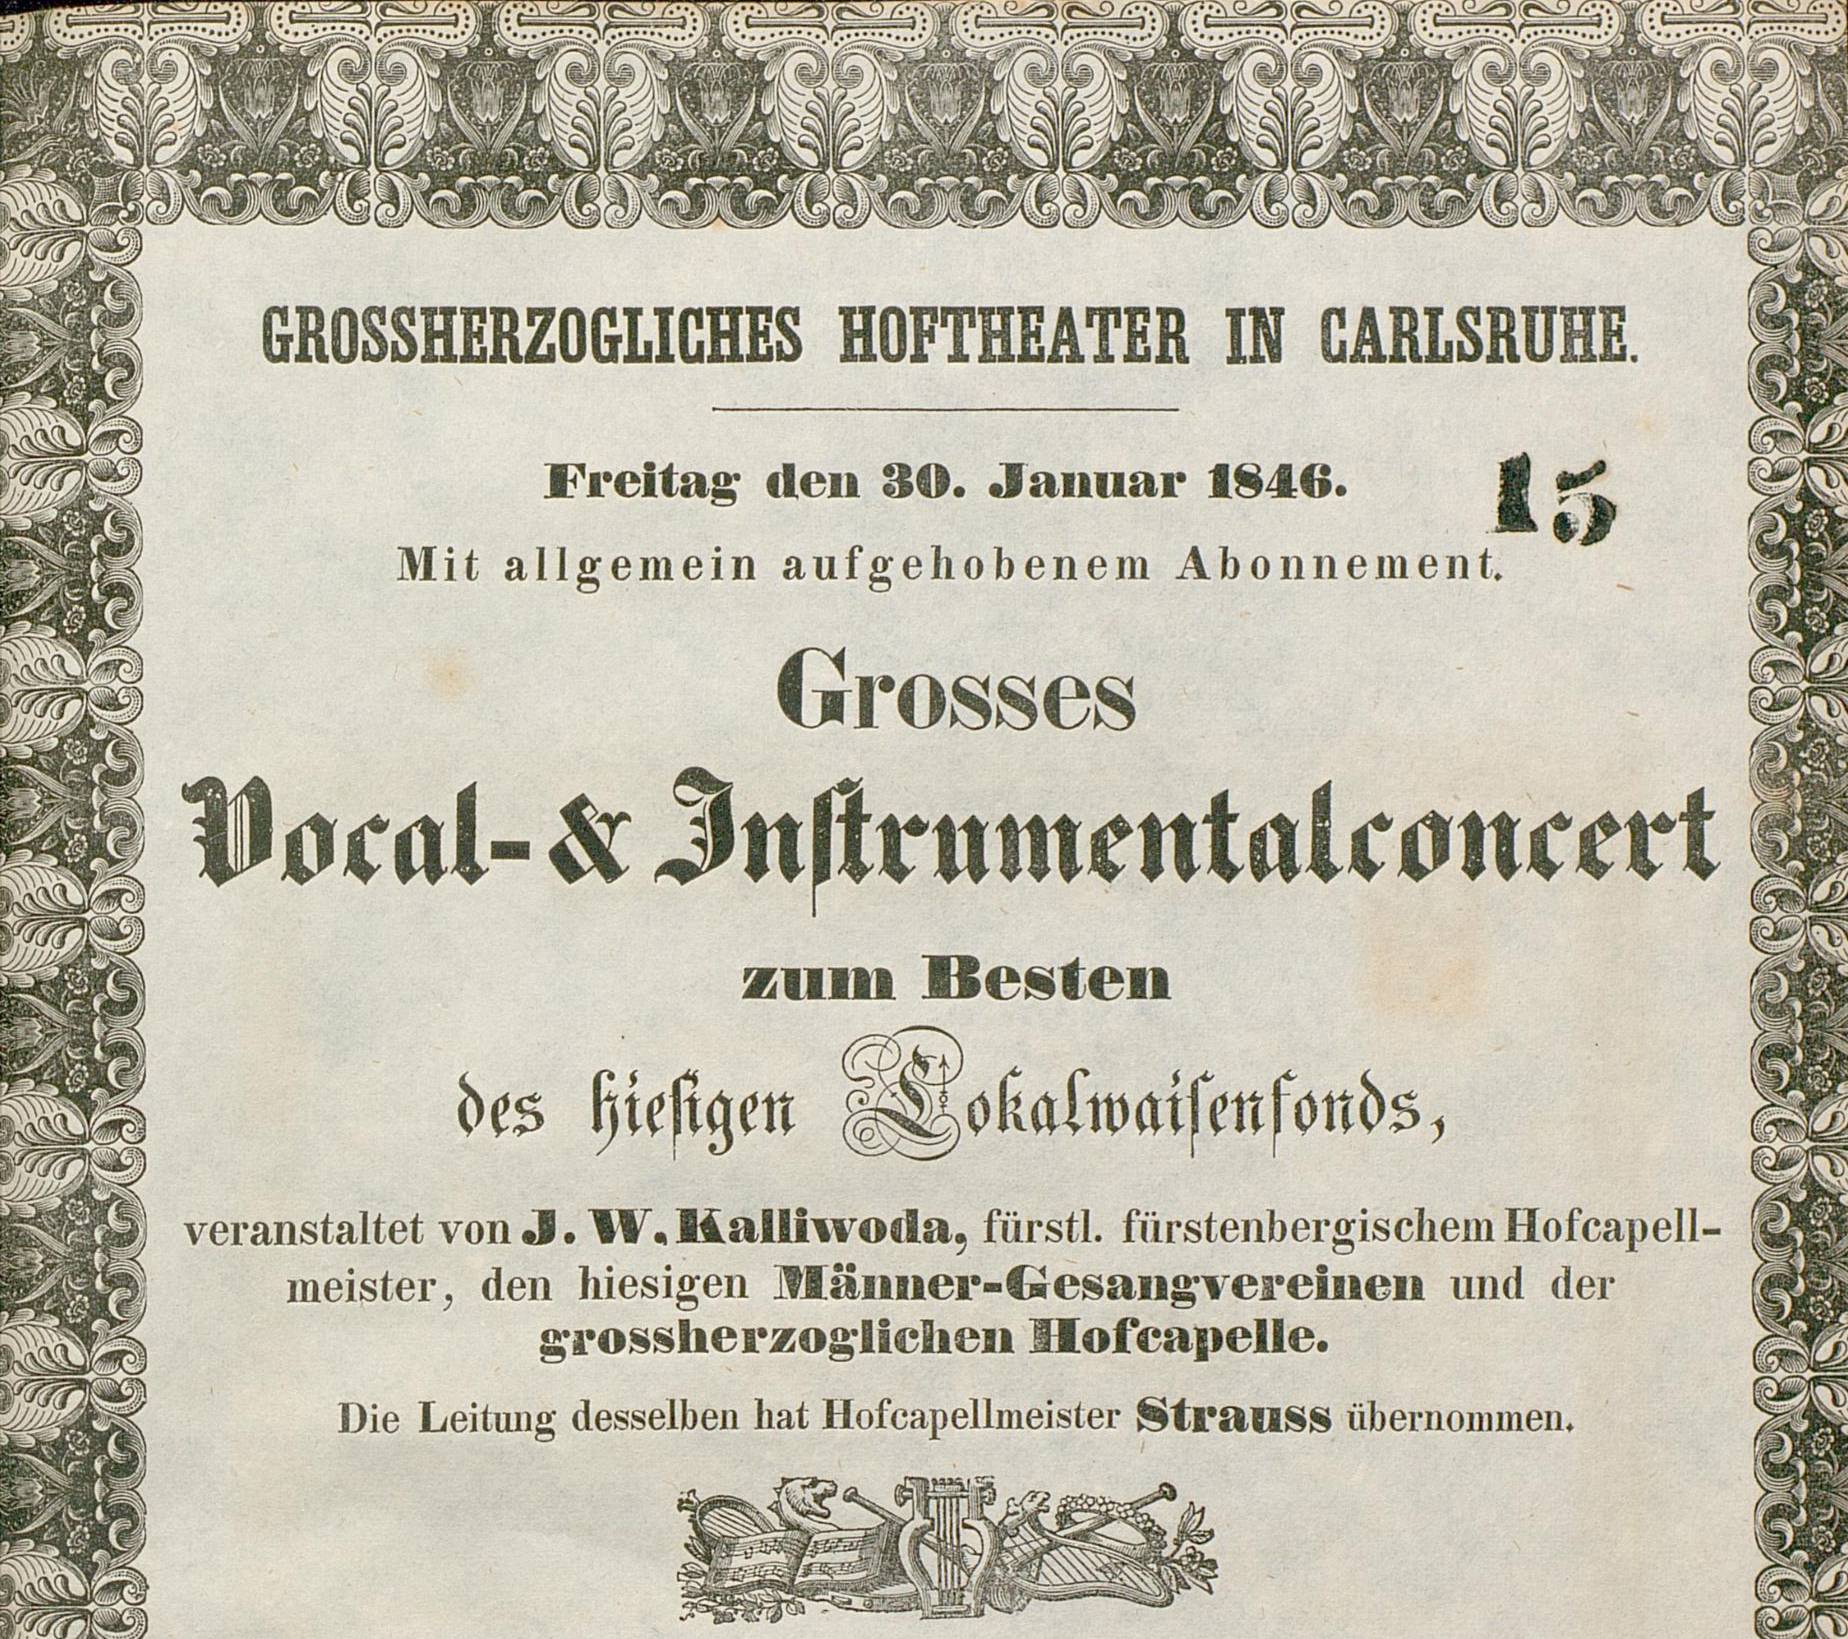 Zu sehen ist ein Theaterzettel vom 30. Januar 1846 mit der Ankündigung eines von Johann Wenzel Kalliwoda veranstalteten Konzerts im großherzoglichen Hoftheater in Karlsruhe.